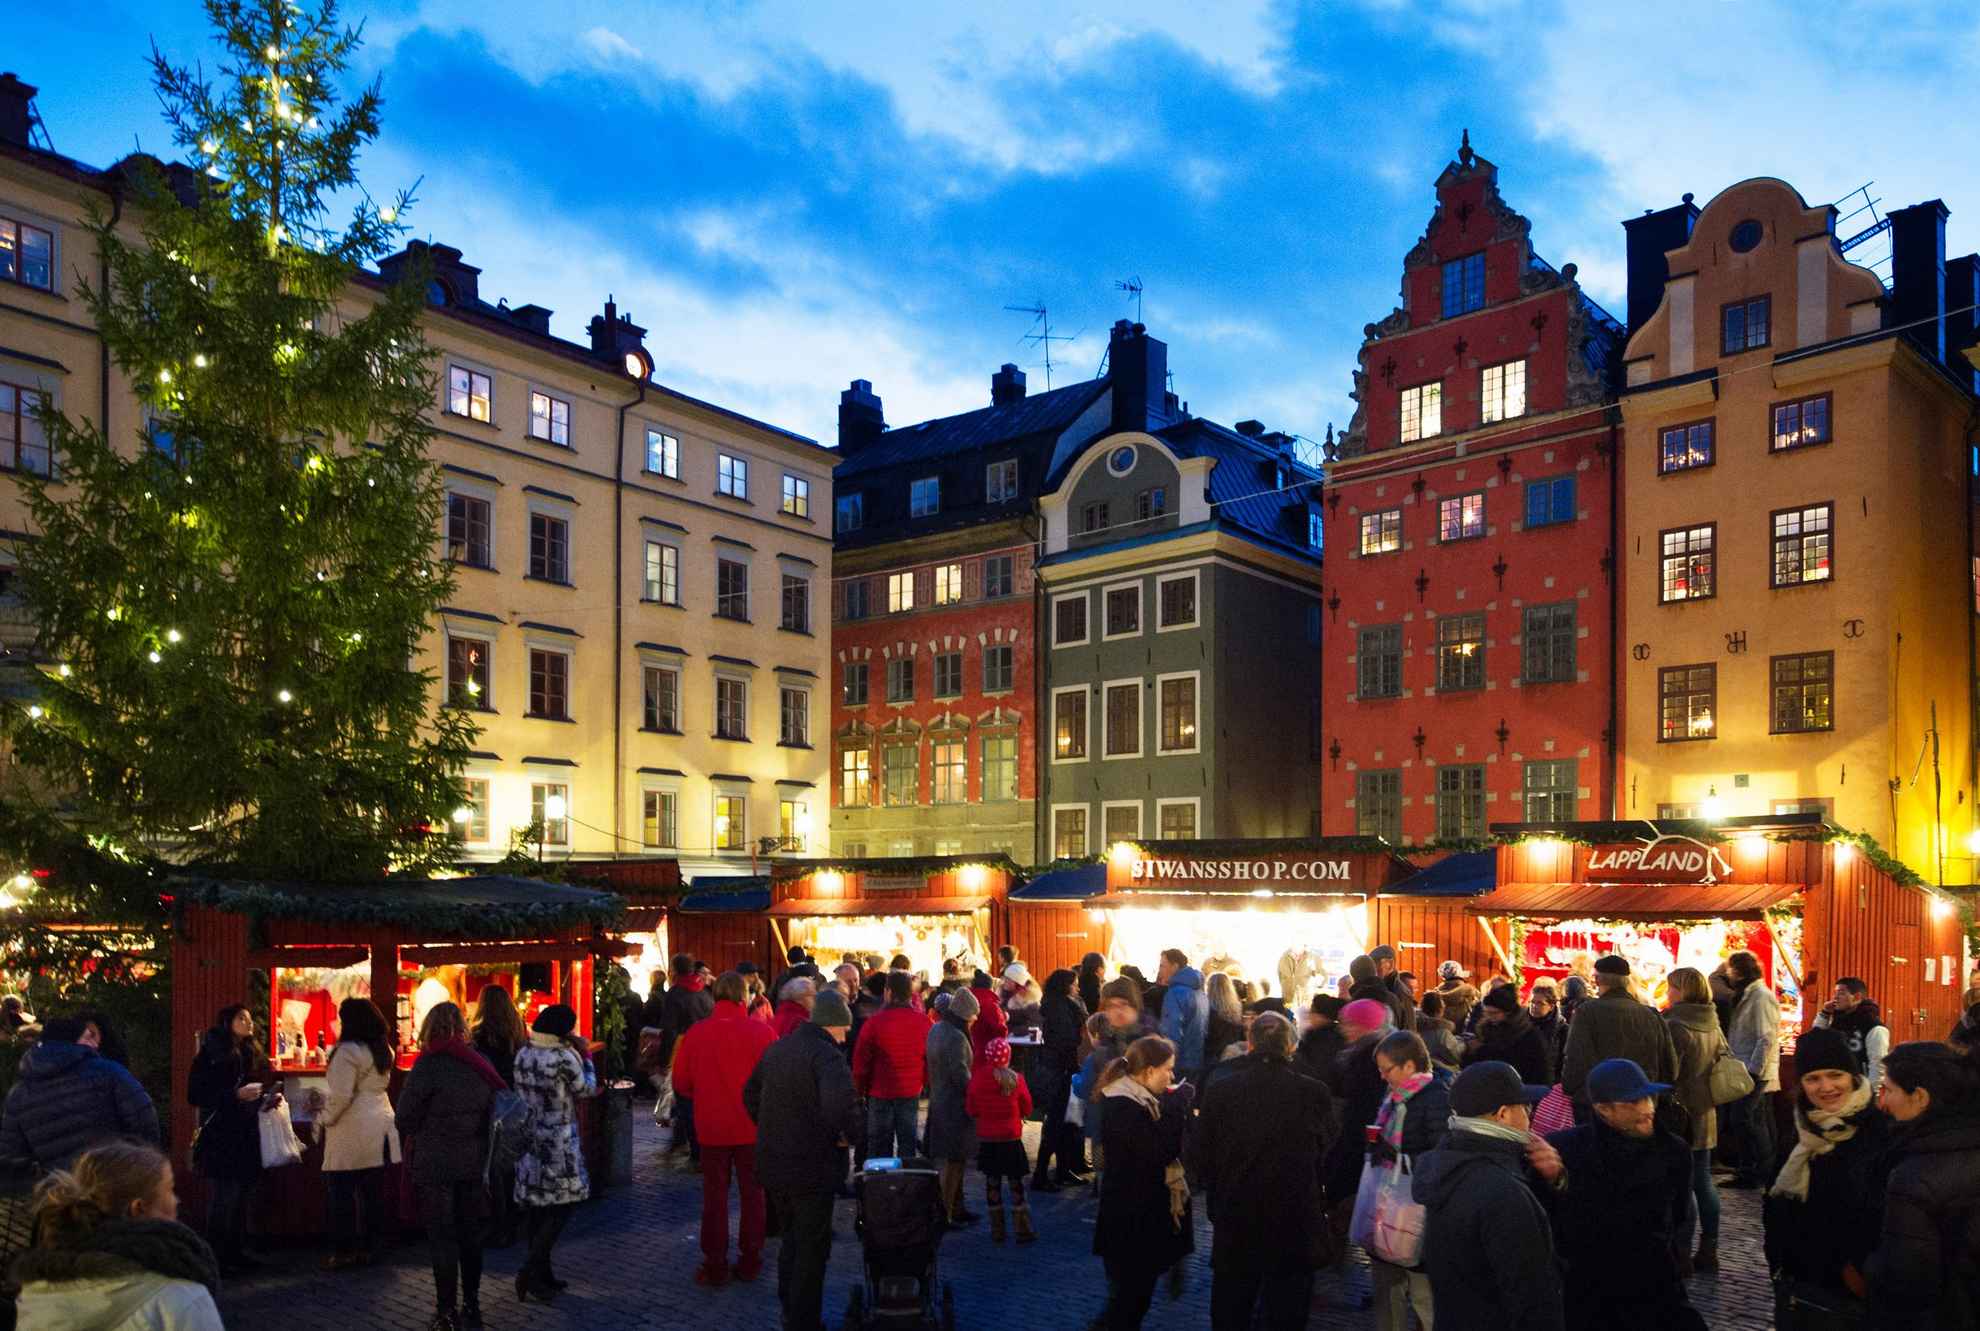 Massa's mensen bezoeken de kraampjes van de ouderwetse kerstmarkt in de oude binnenstad van Stockholm, naast een verlichte kerstboom.